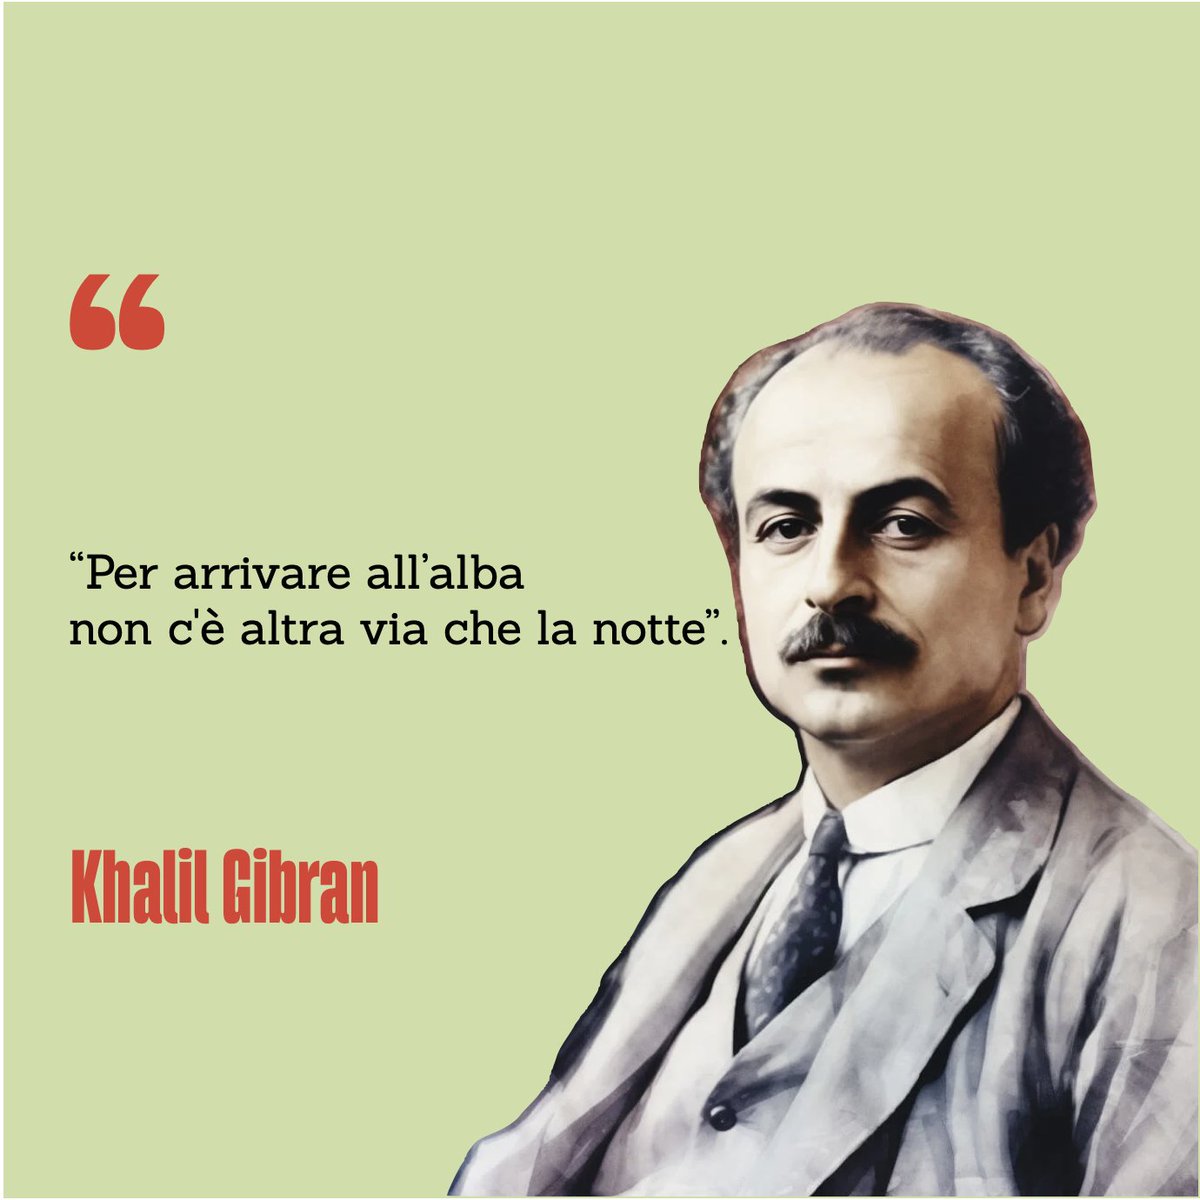 🗓️#AccaddeOggi 
📖Il #10aprile 1931 morì Khalil Gibran, poeta, scrittore, artista e filosofo libanese.